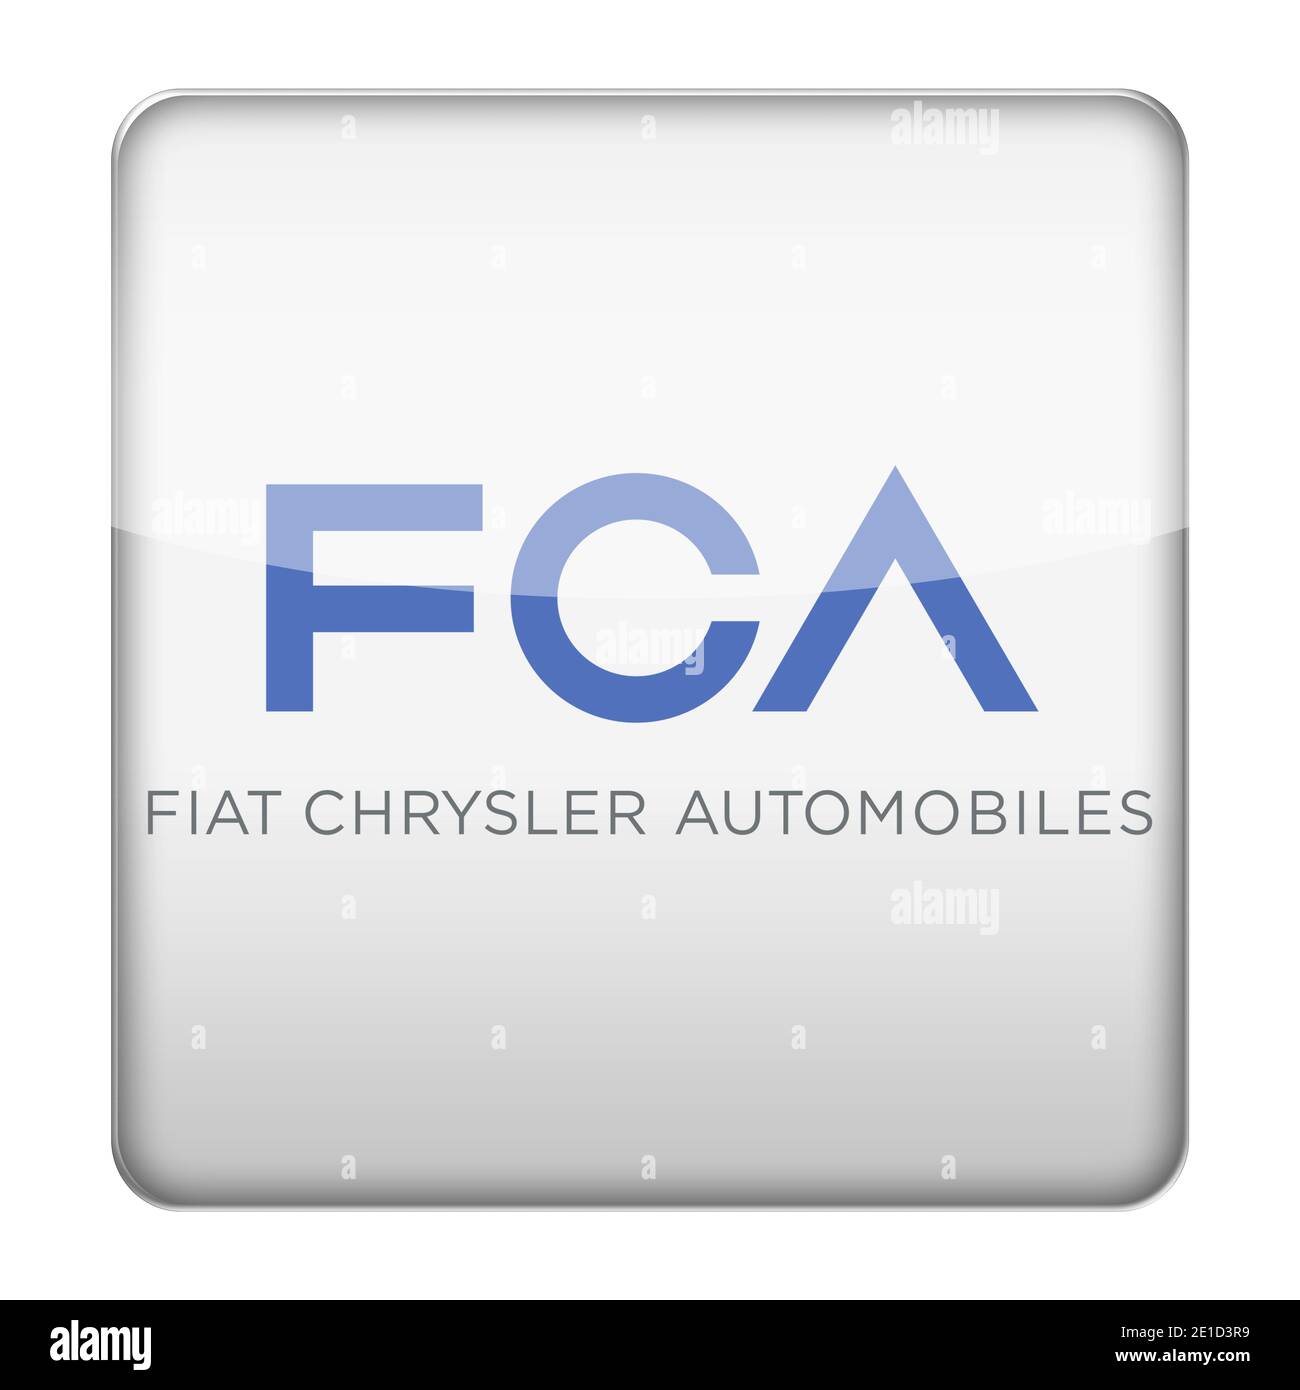 Fiat Chrysler Automobiles logo Stock Photo